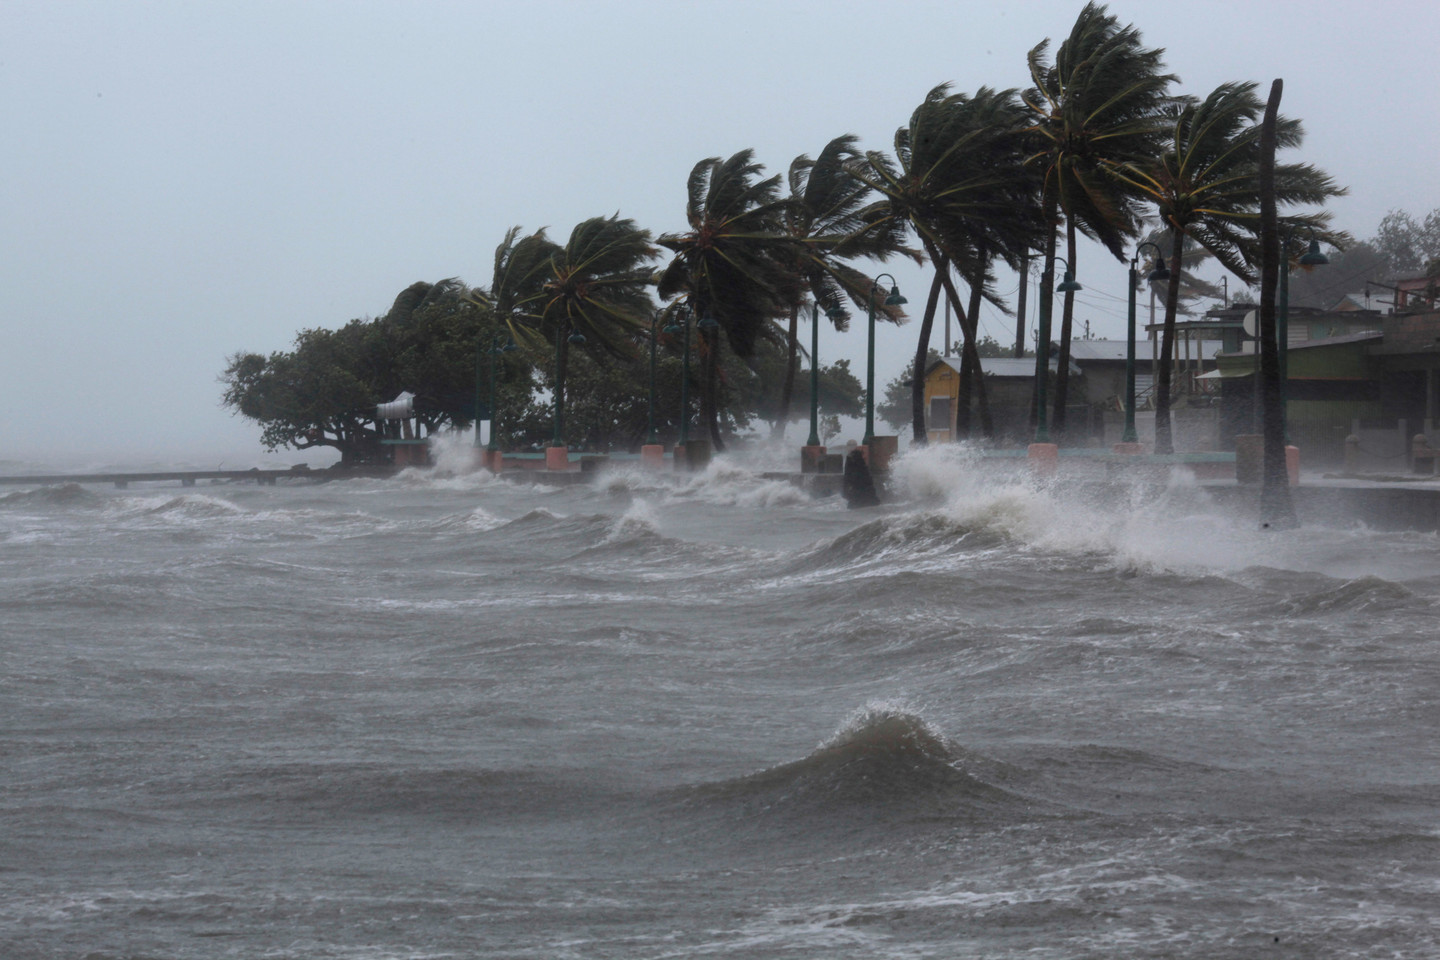 <p><span>Ураган на побережье. Фото &copy; REUTERS/Alvin Baez</span></p>
<div>
<div></div>
</div>
<div>
<div></div>
</div>